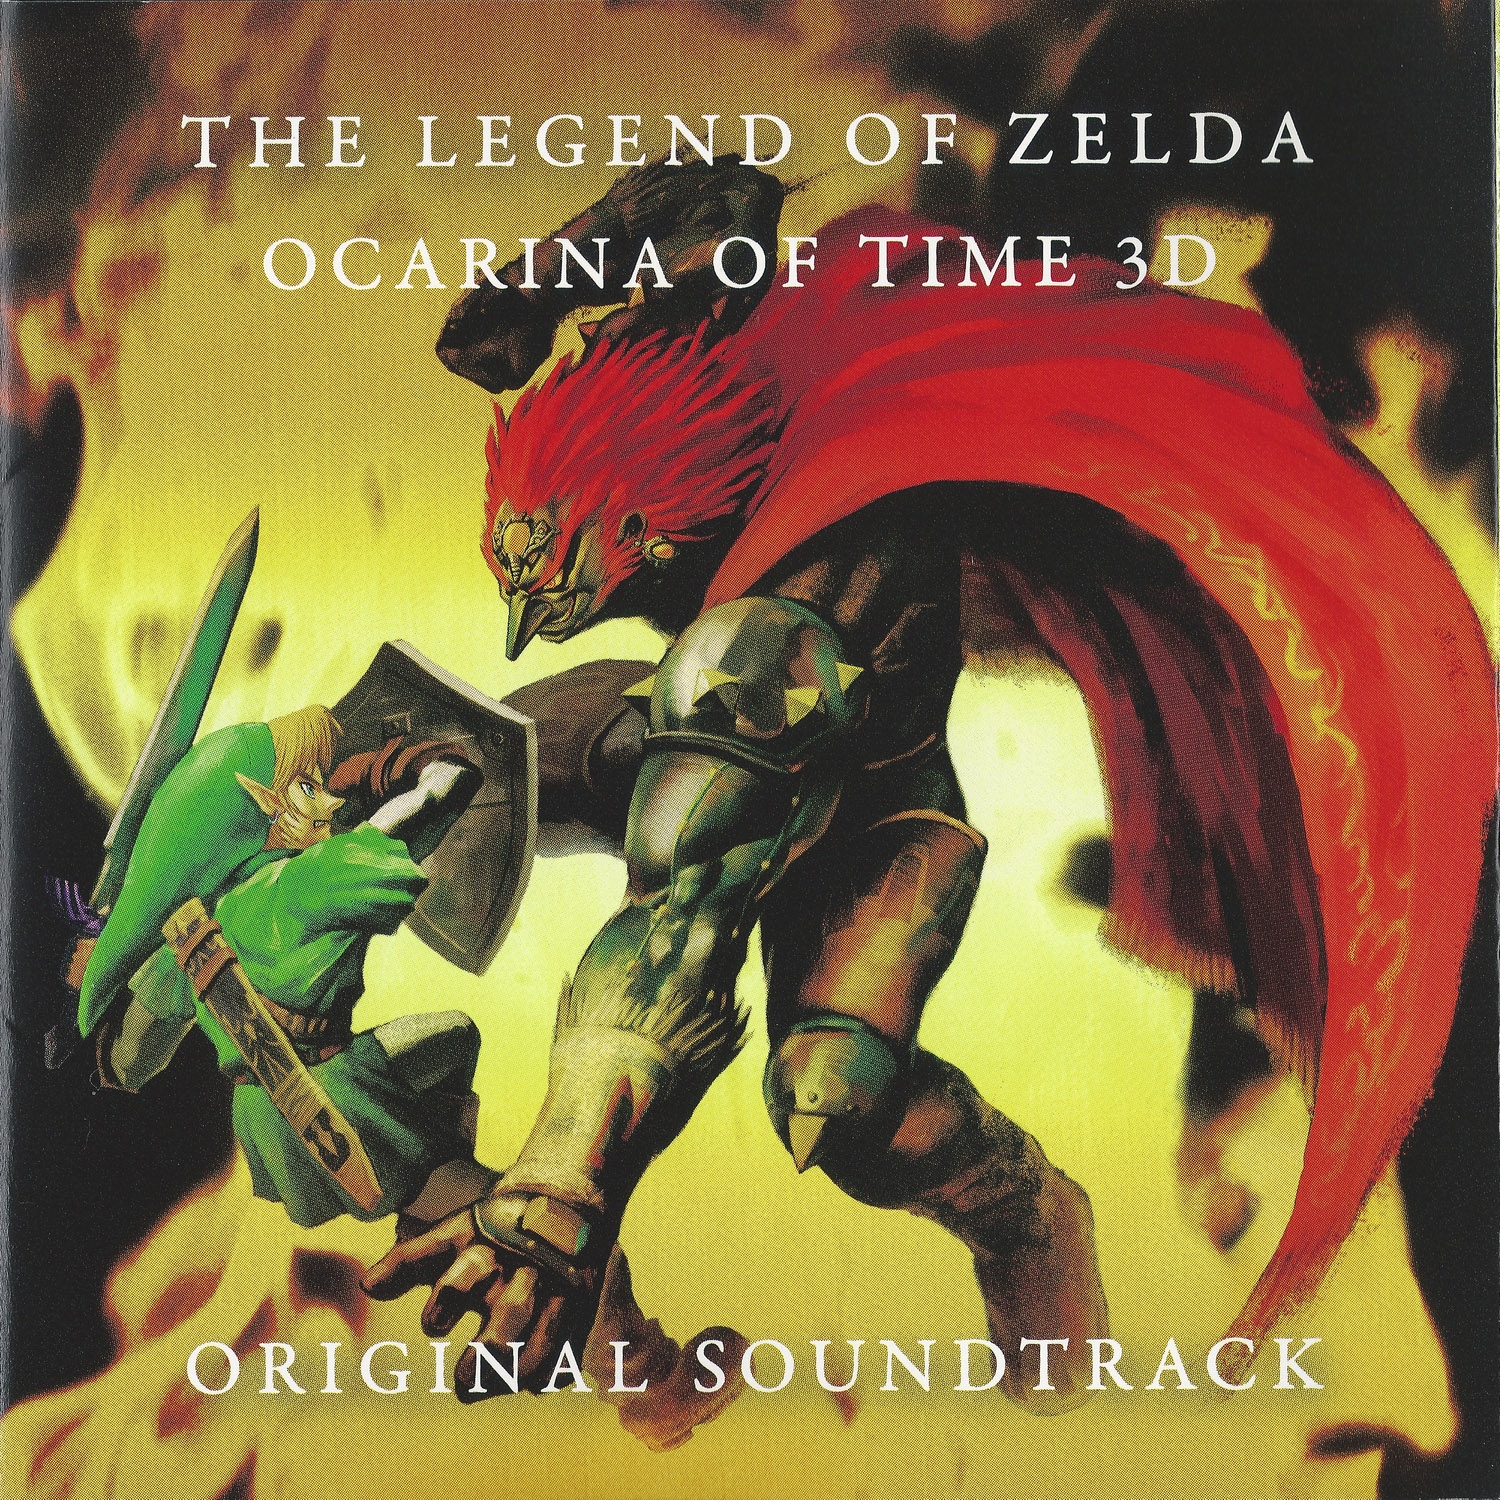 THE LEGEND OF ZELDA: OCARINA OF TIME 3D ORIGINAL SOUNDTRACK (2011) MP3 -  Download THE LEGEND OF ZELDA: OCARINA OF TIME 3D ORIGINAL SOUNDTRACK (2011)  Soundtracks for FREE!